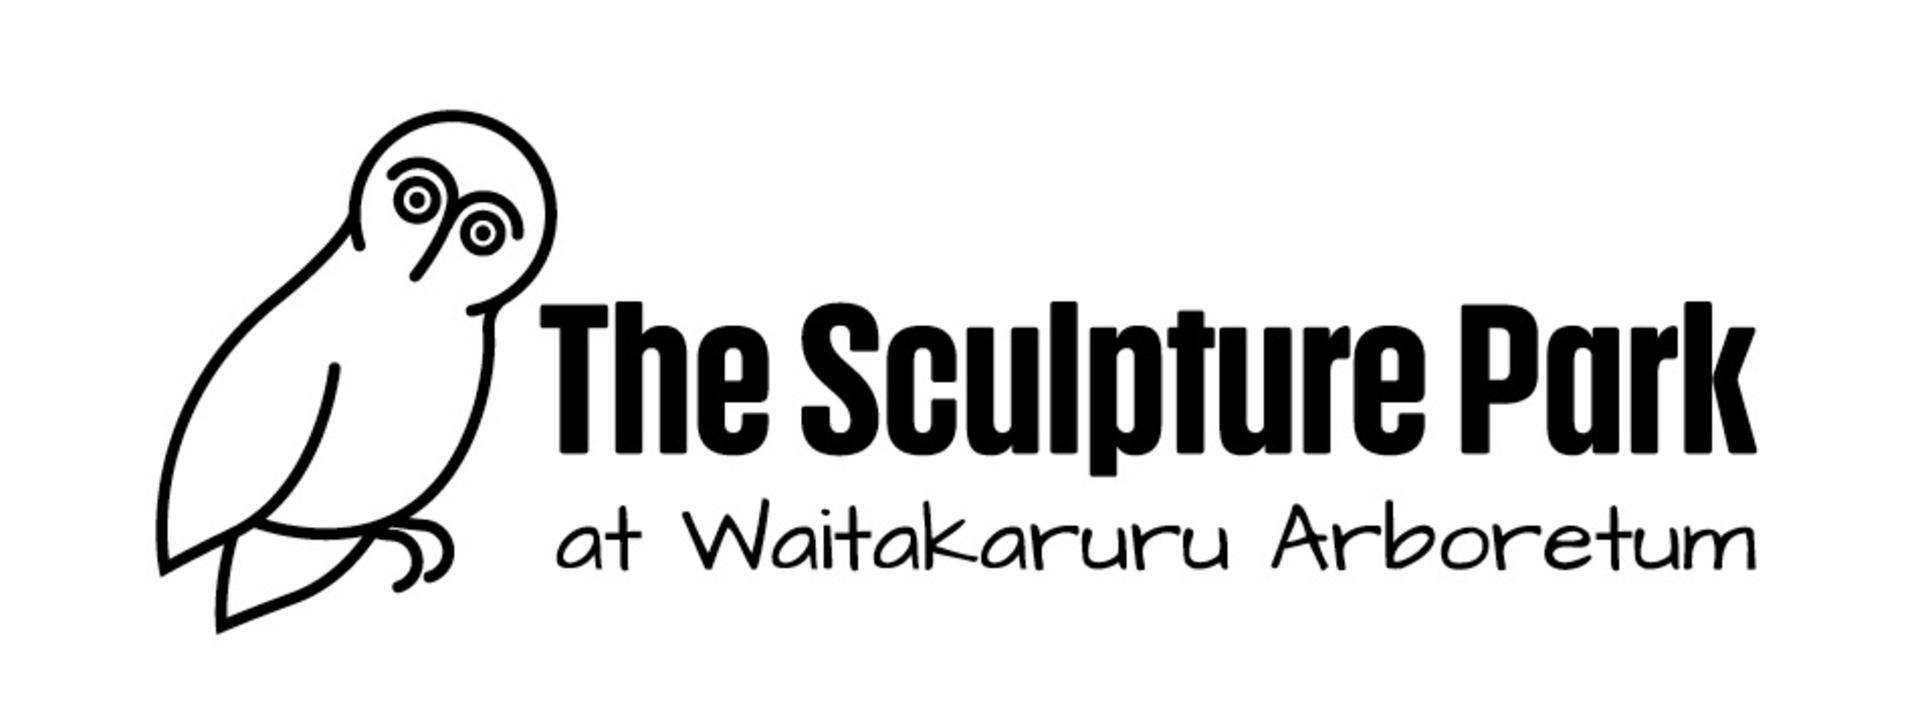 logo-the-sculpture-park-2021.jpg